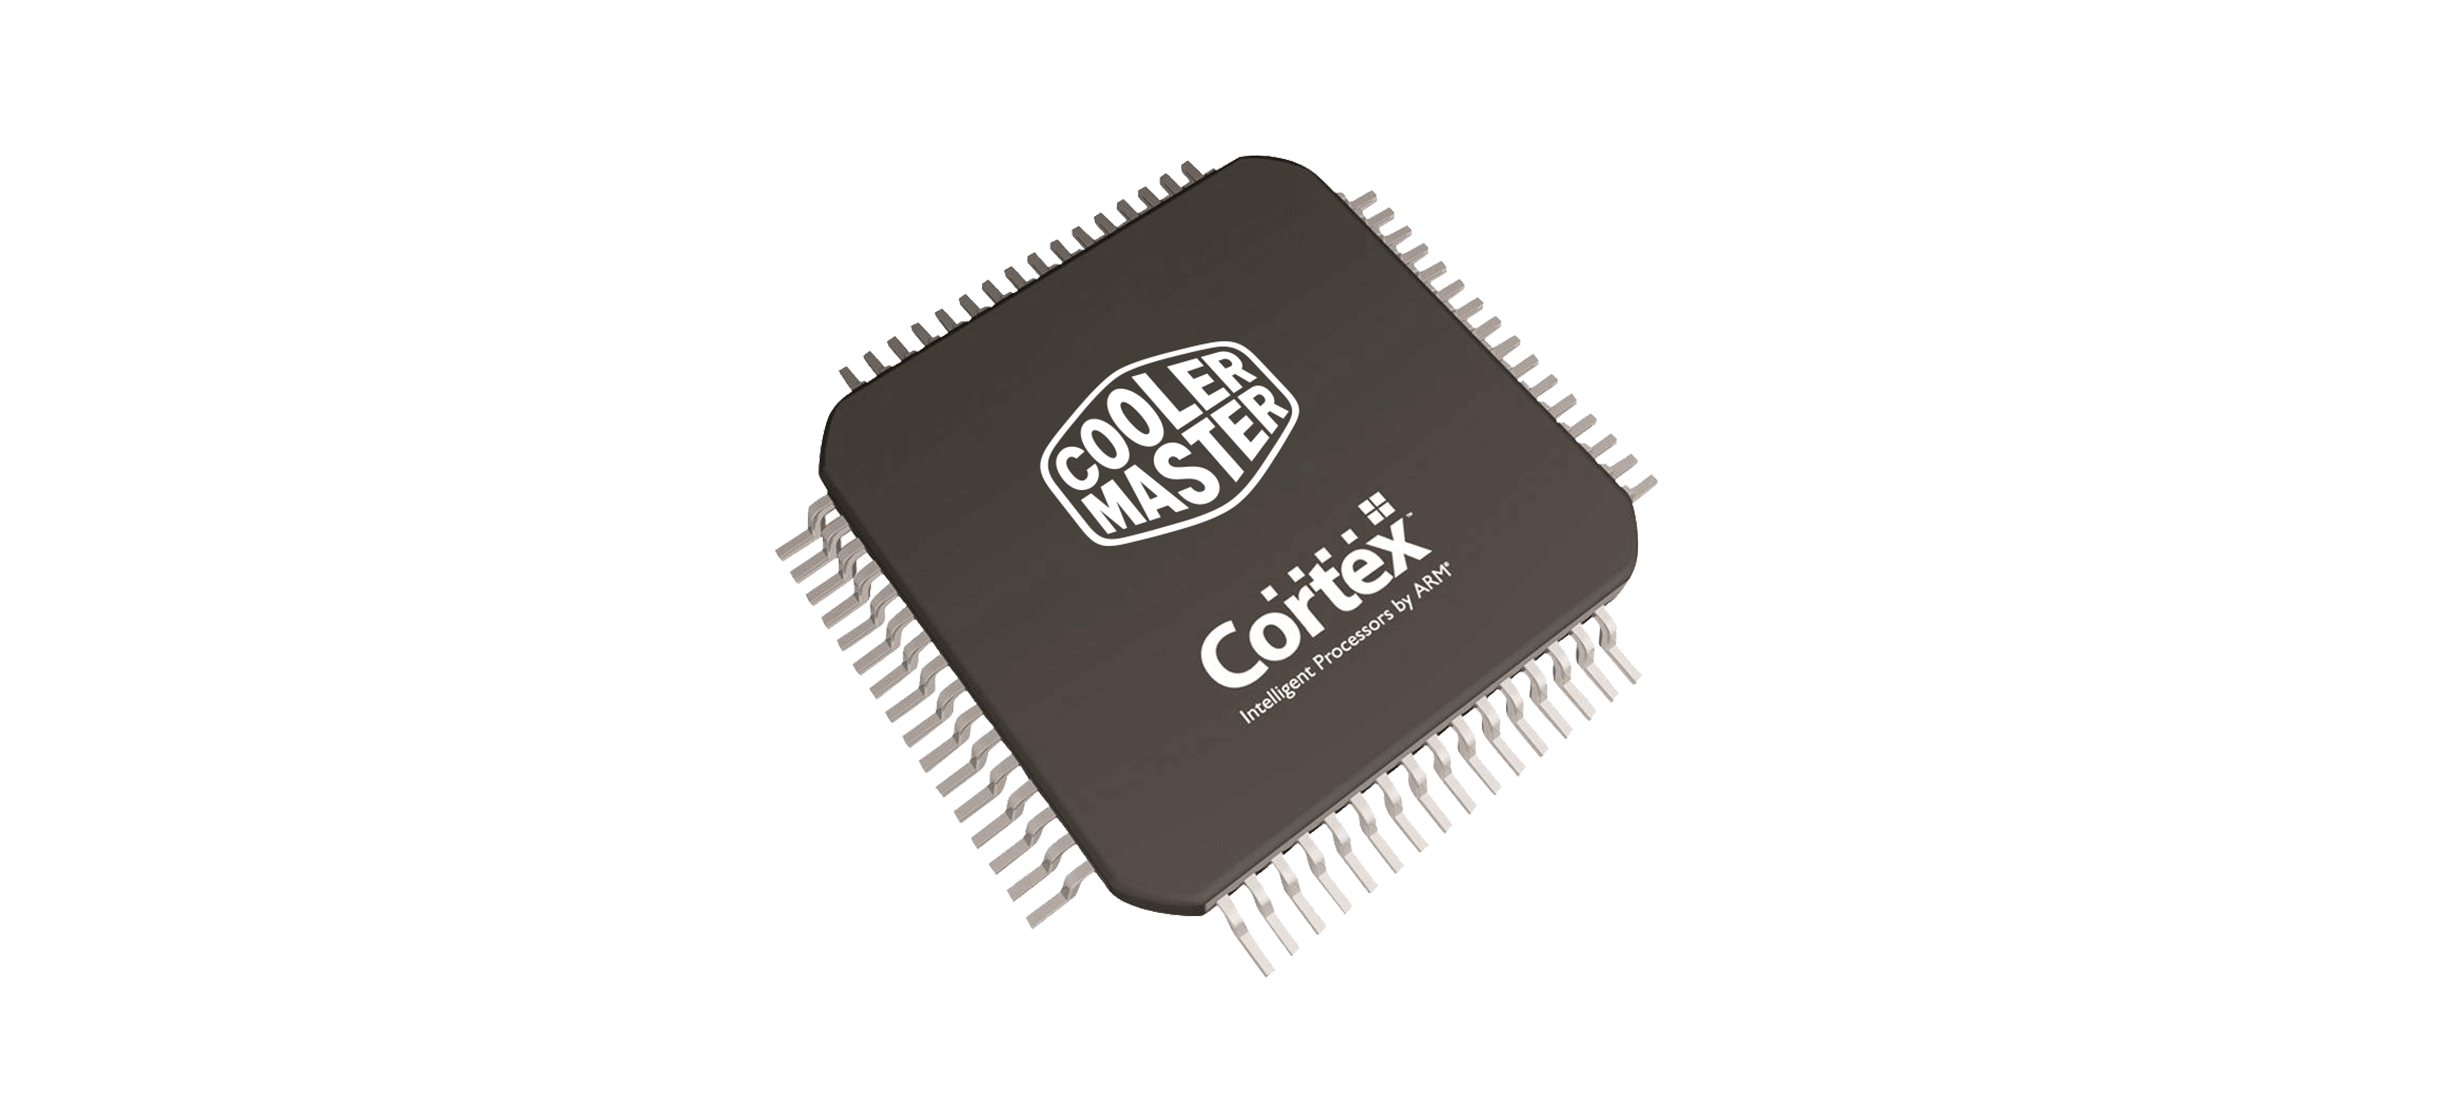 Bàn phím Cooler Master SK622 White (Bluetooth/Wireless/USB/RGB/Red sw) trang bị con chip xử lý cao cấp, có thể lưu profile, macro phím